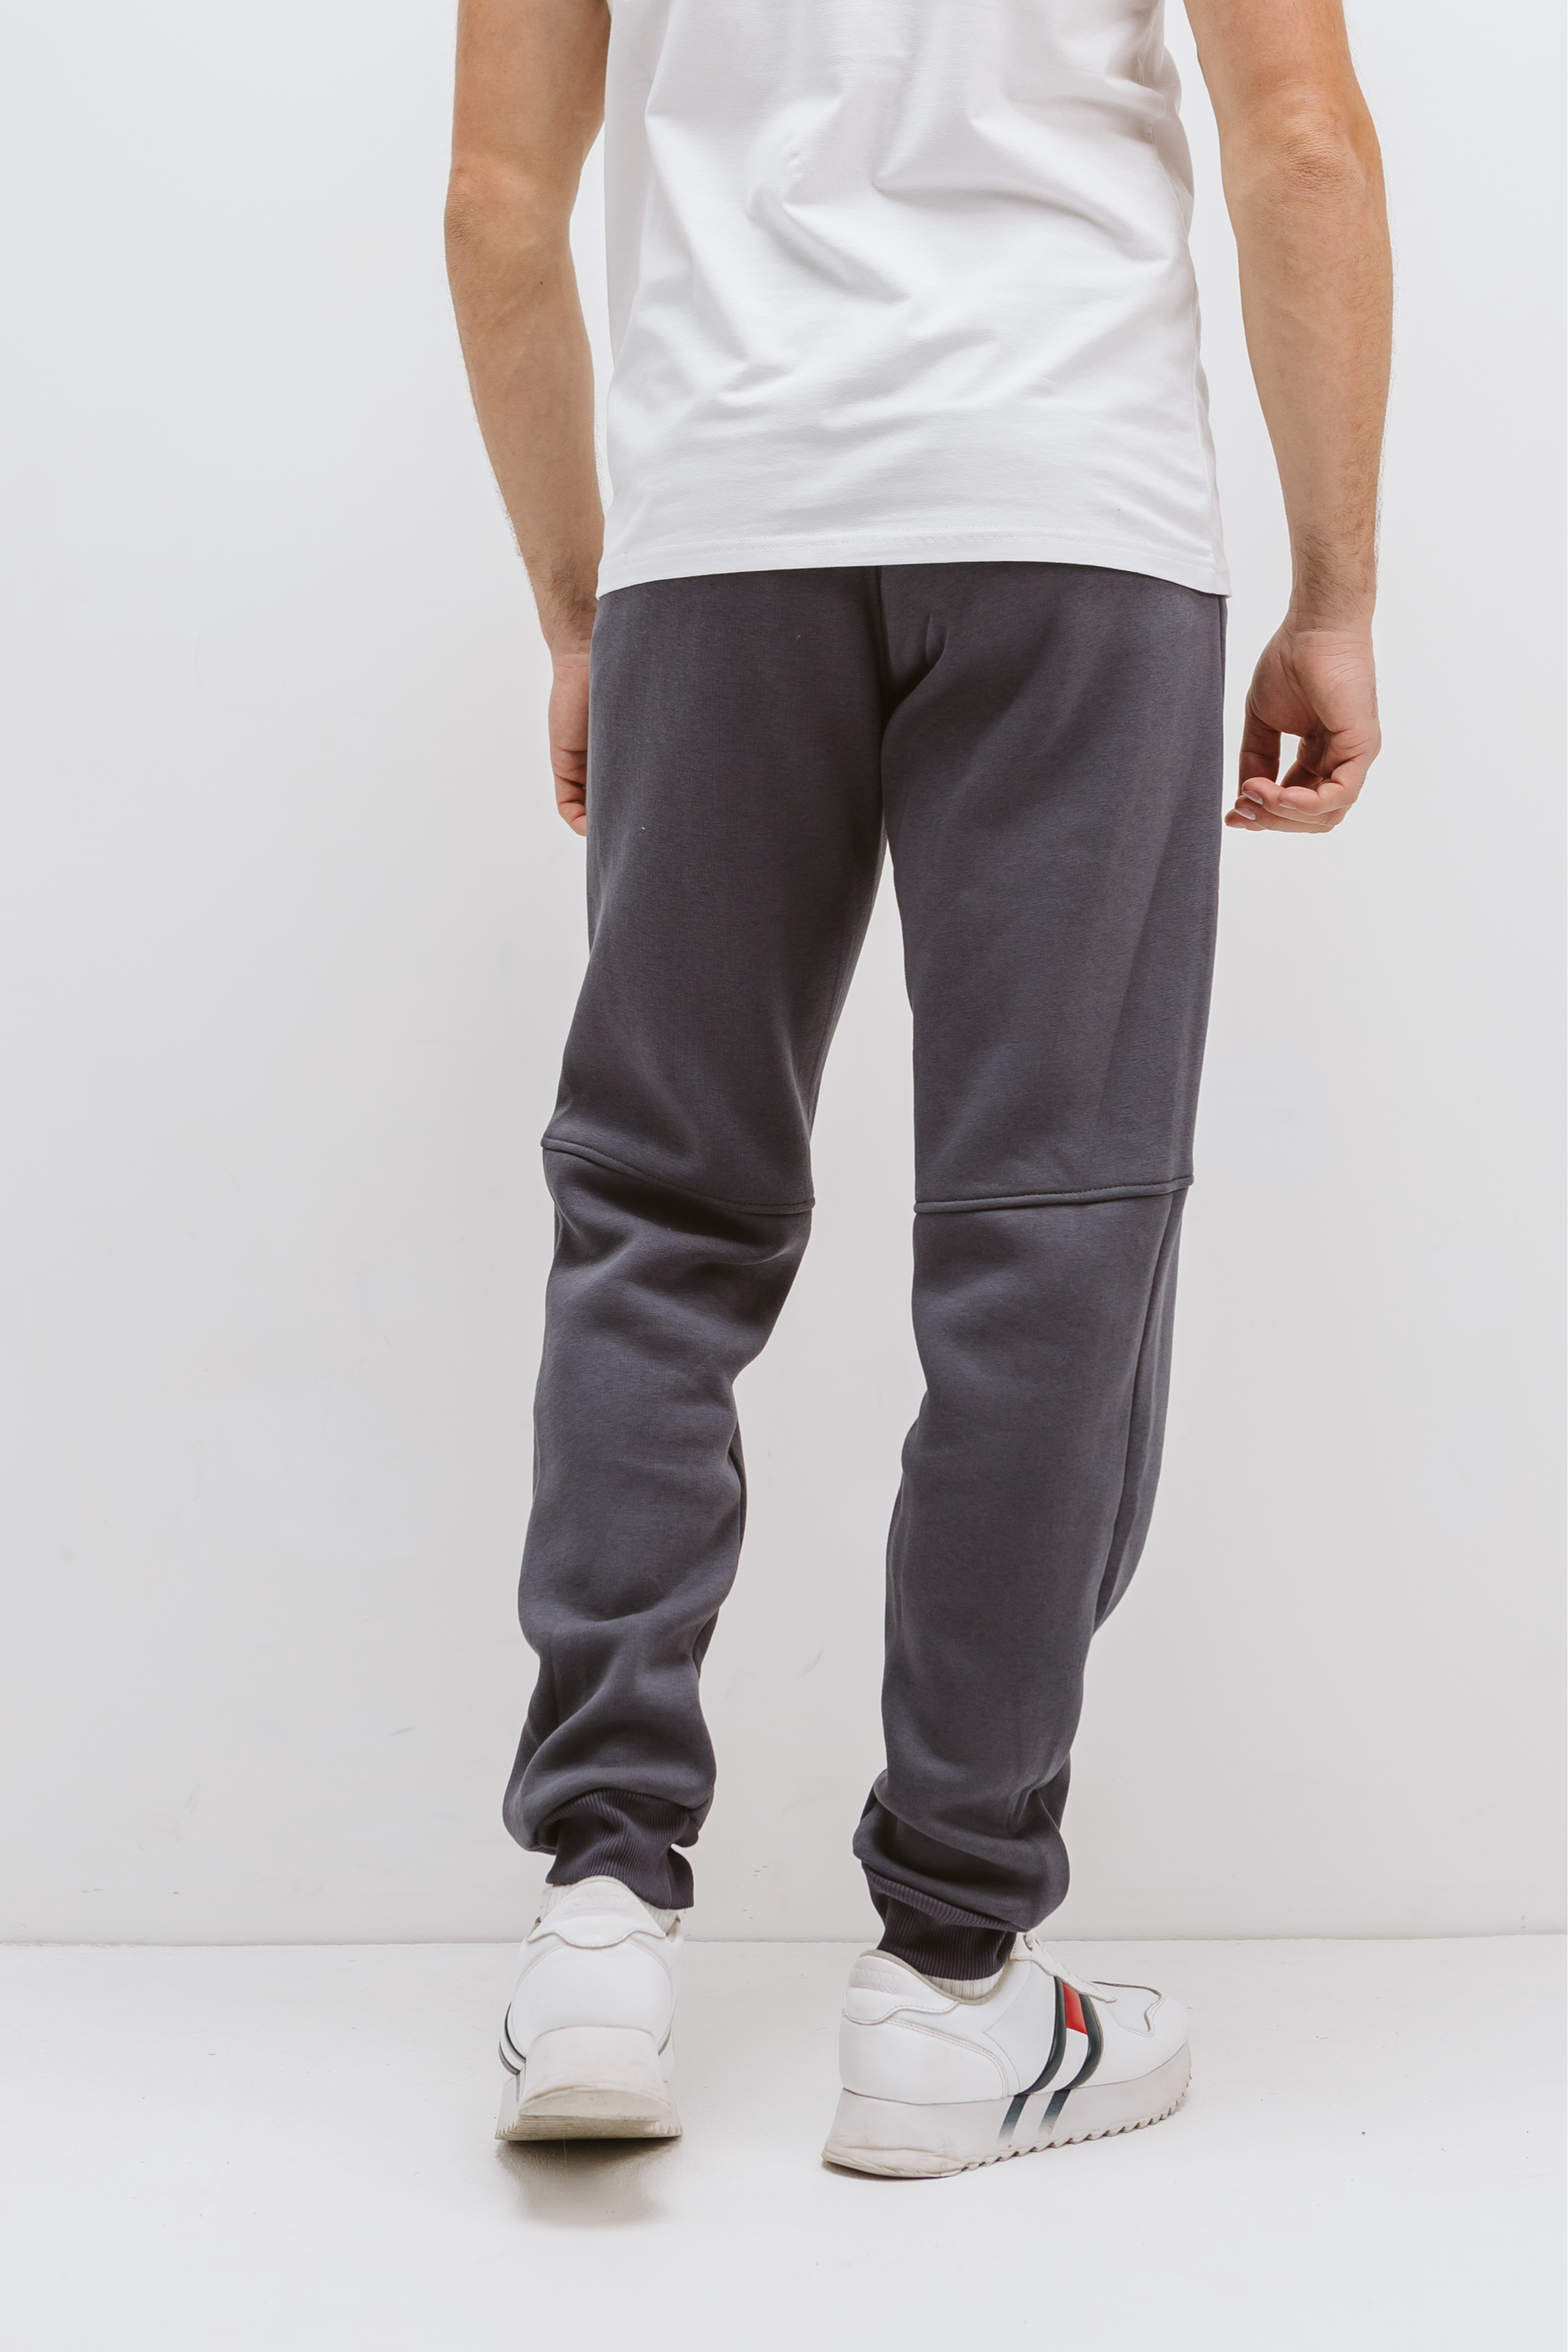 Теплые мужские штаны резанные с карманами на застежках 30668